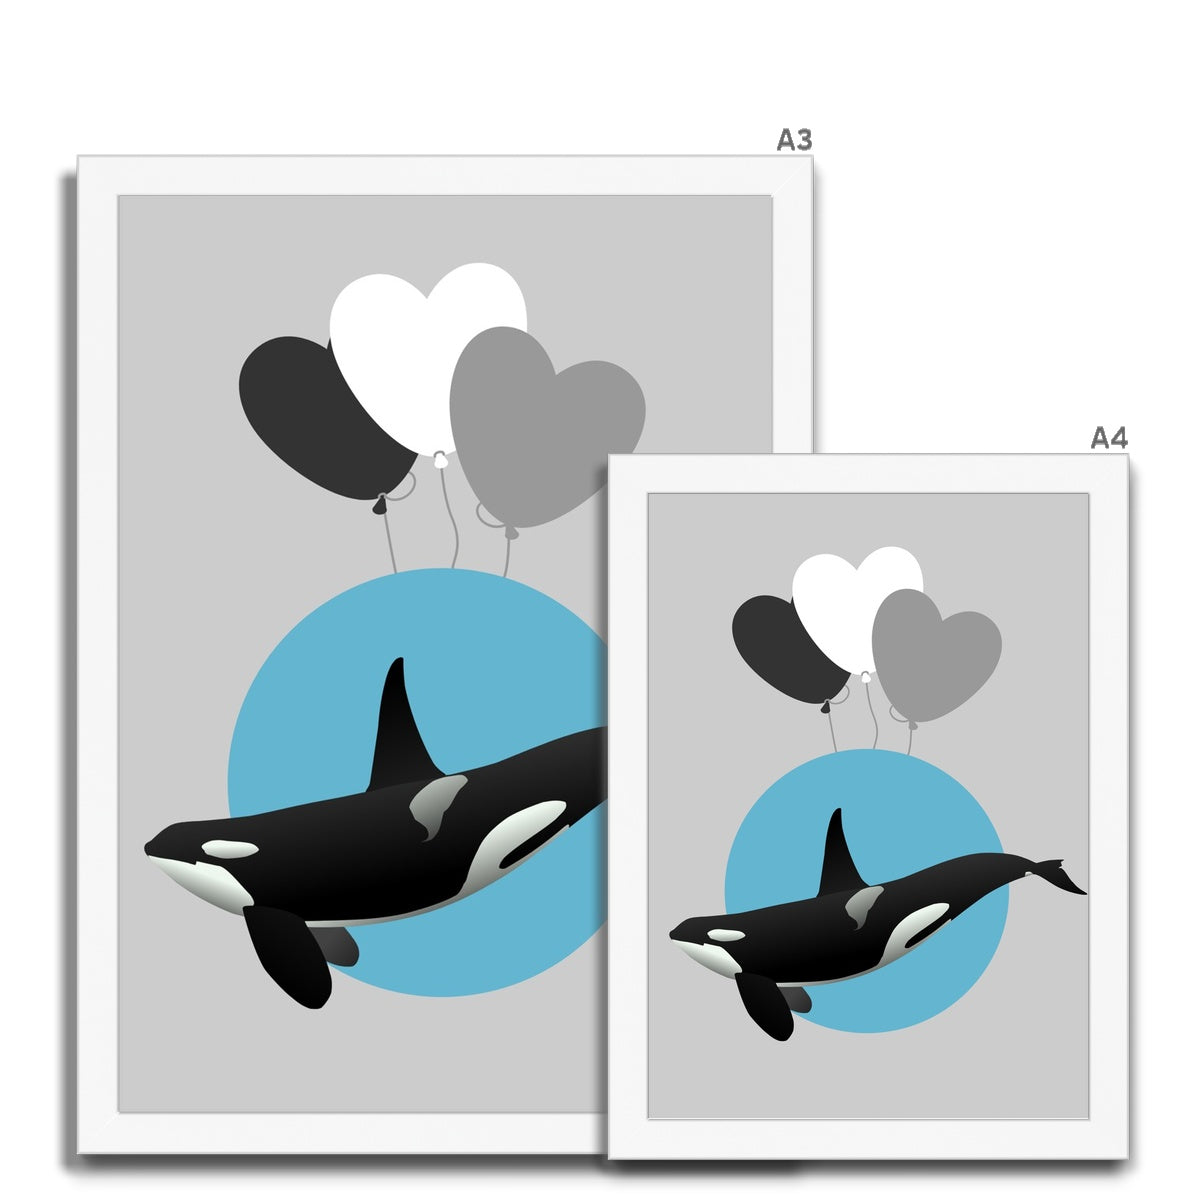 Orca Framed Print